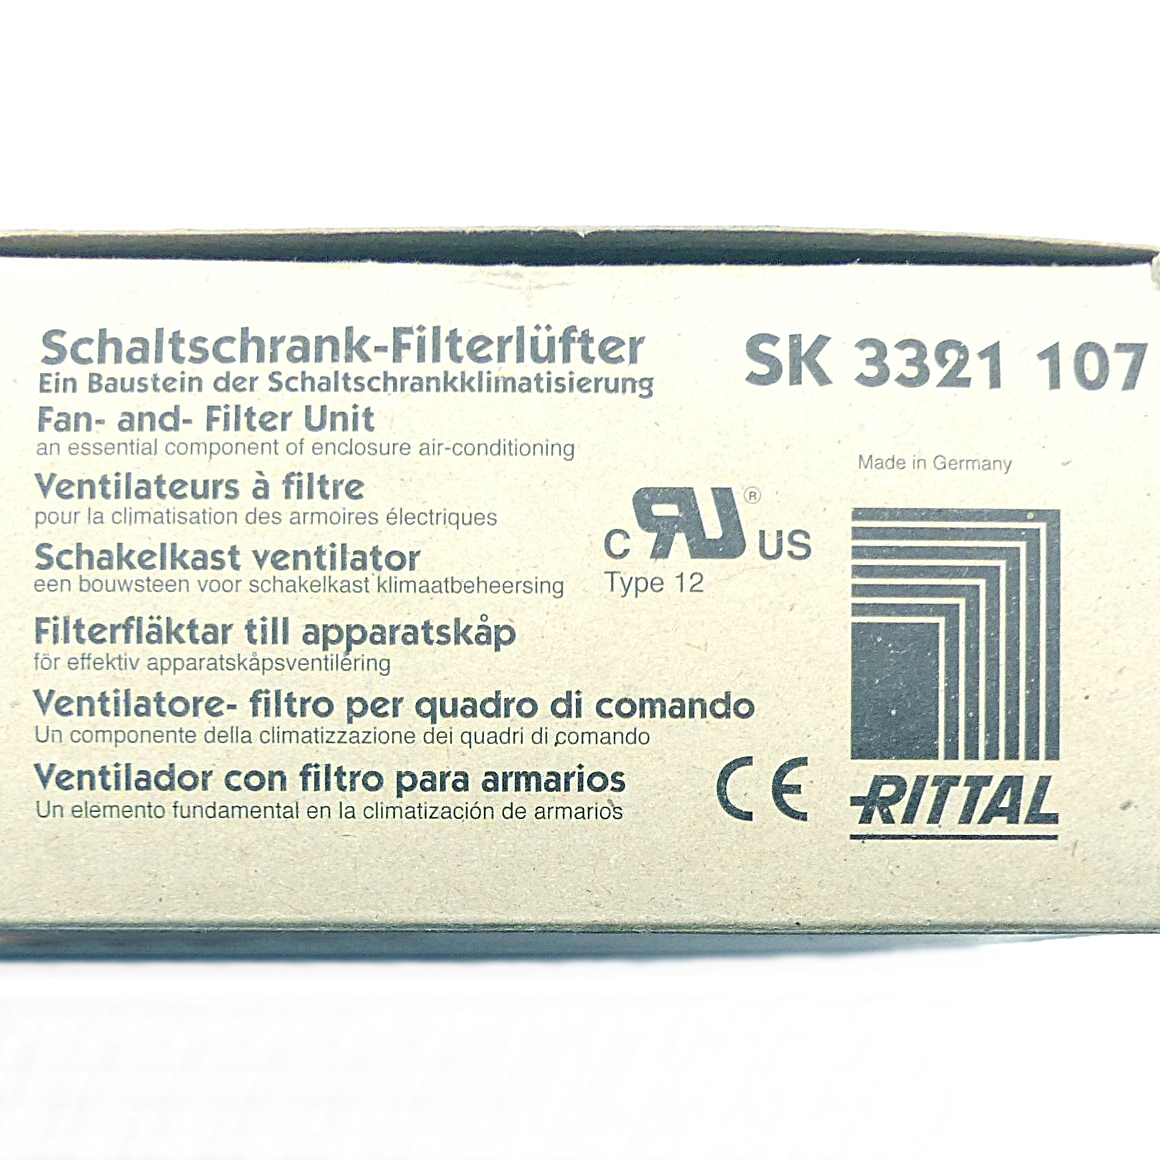 Schaltschrank-Filterlüfter SK 3321 107 